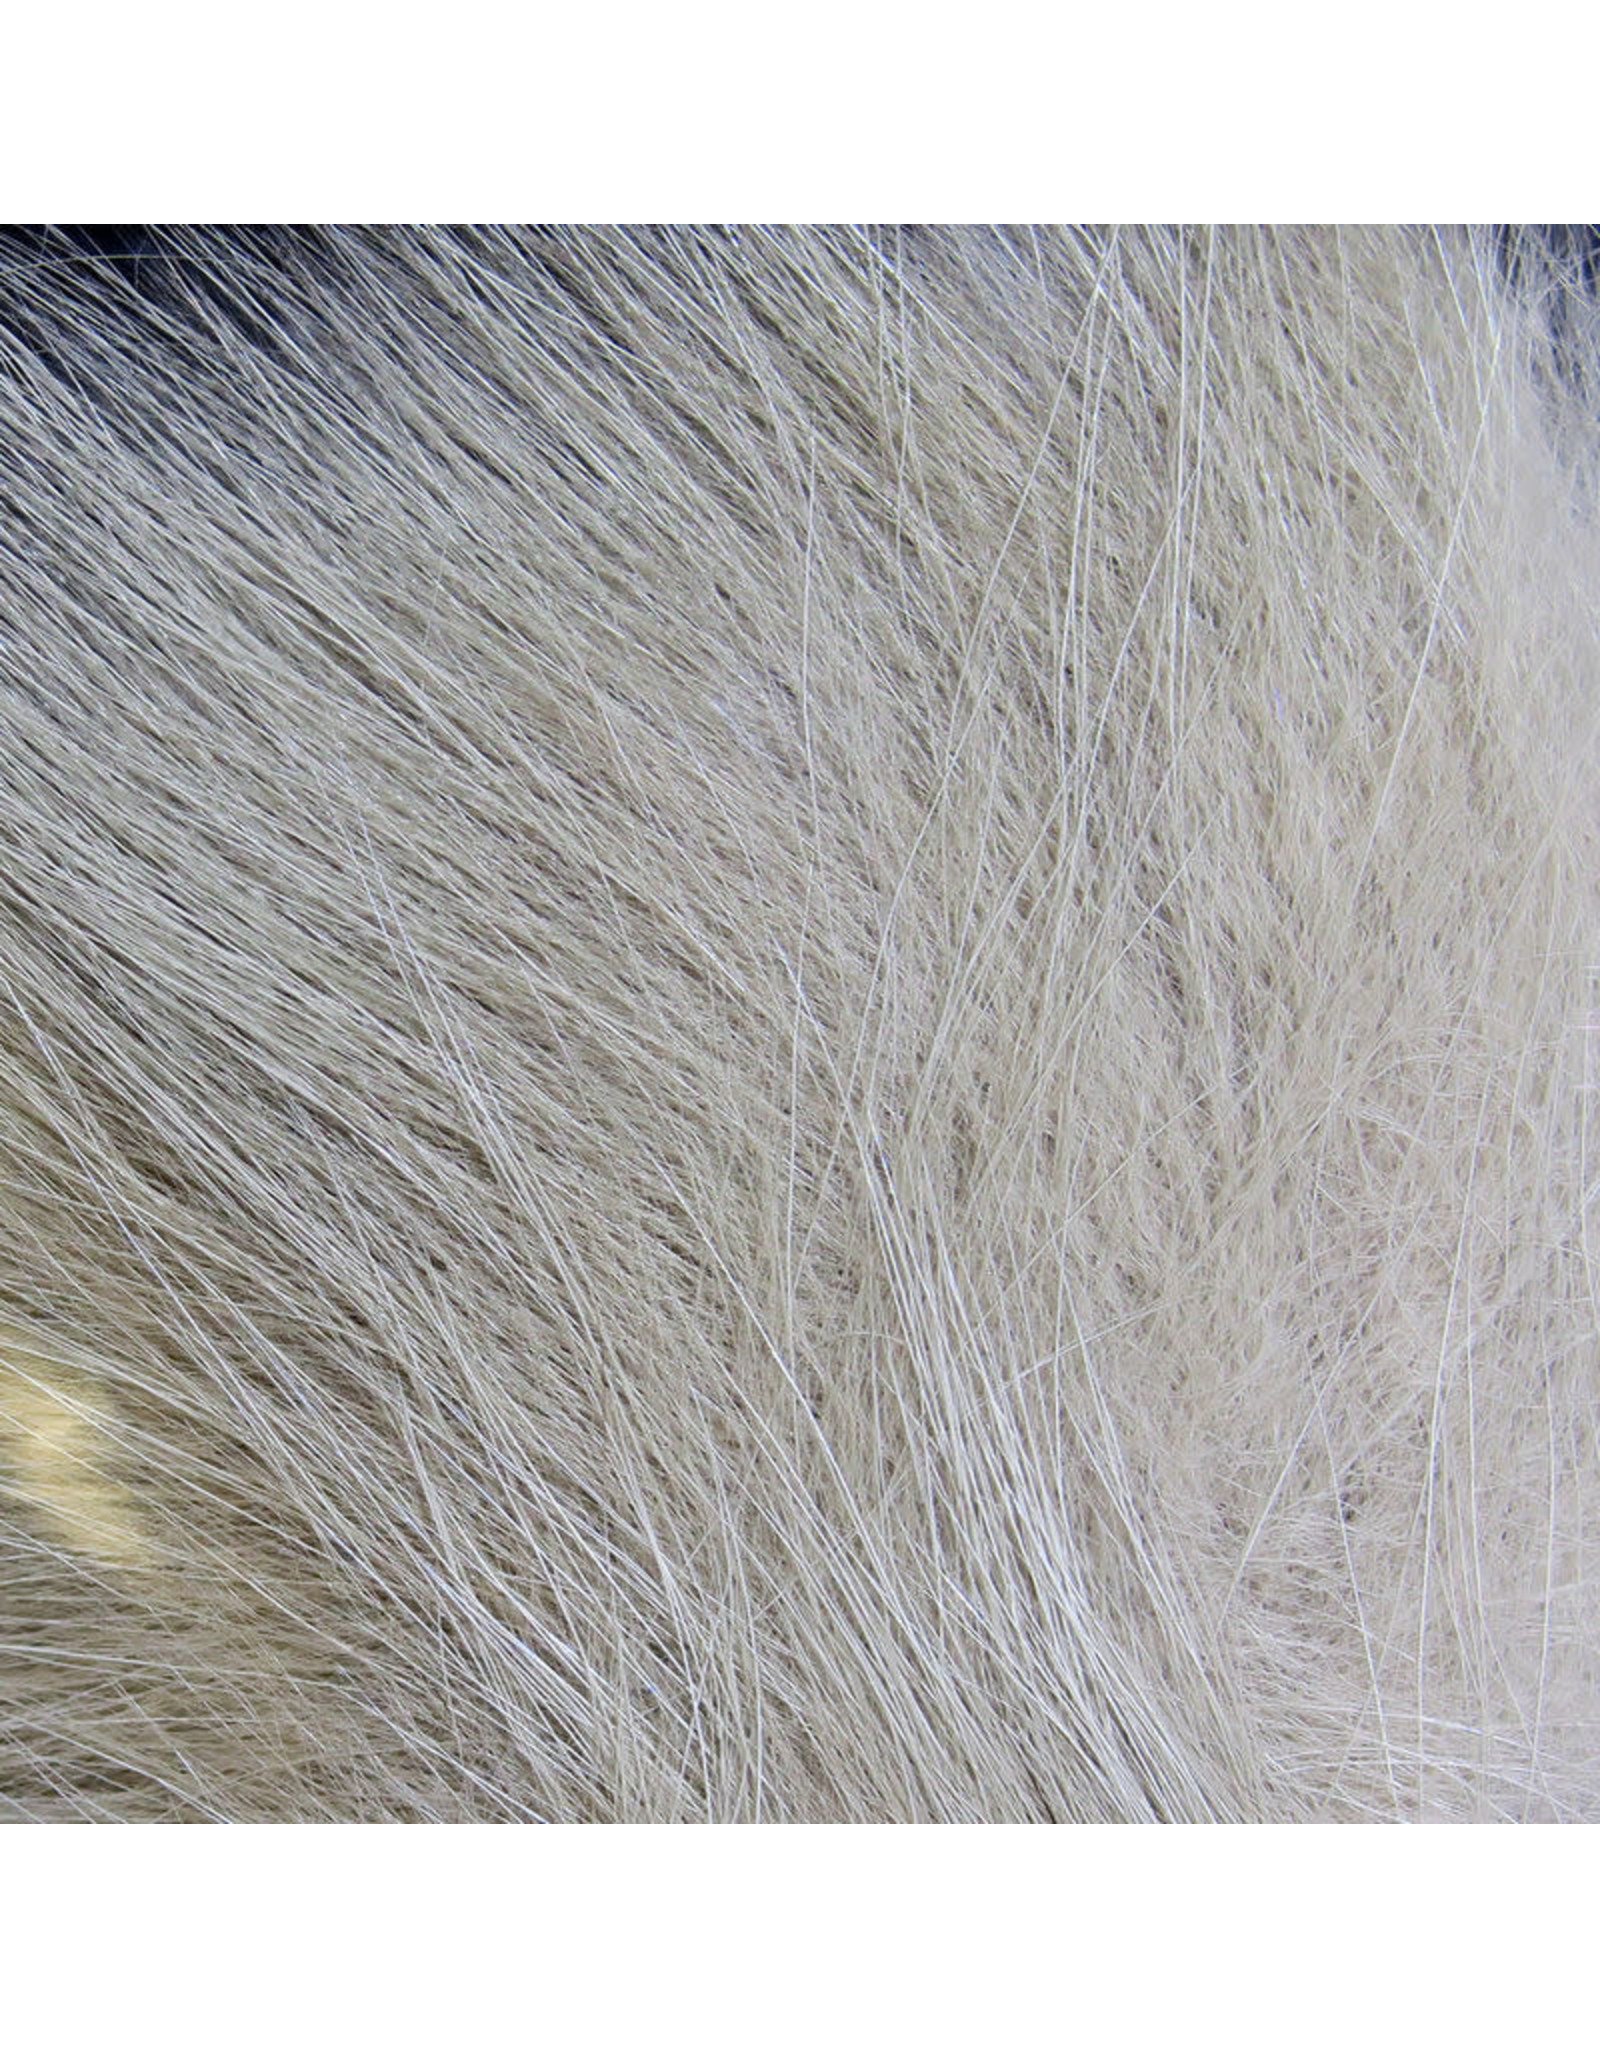 Hareline Dubbin Hareline Arctic Fox Hair